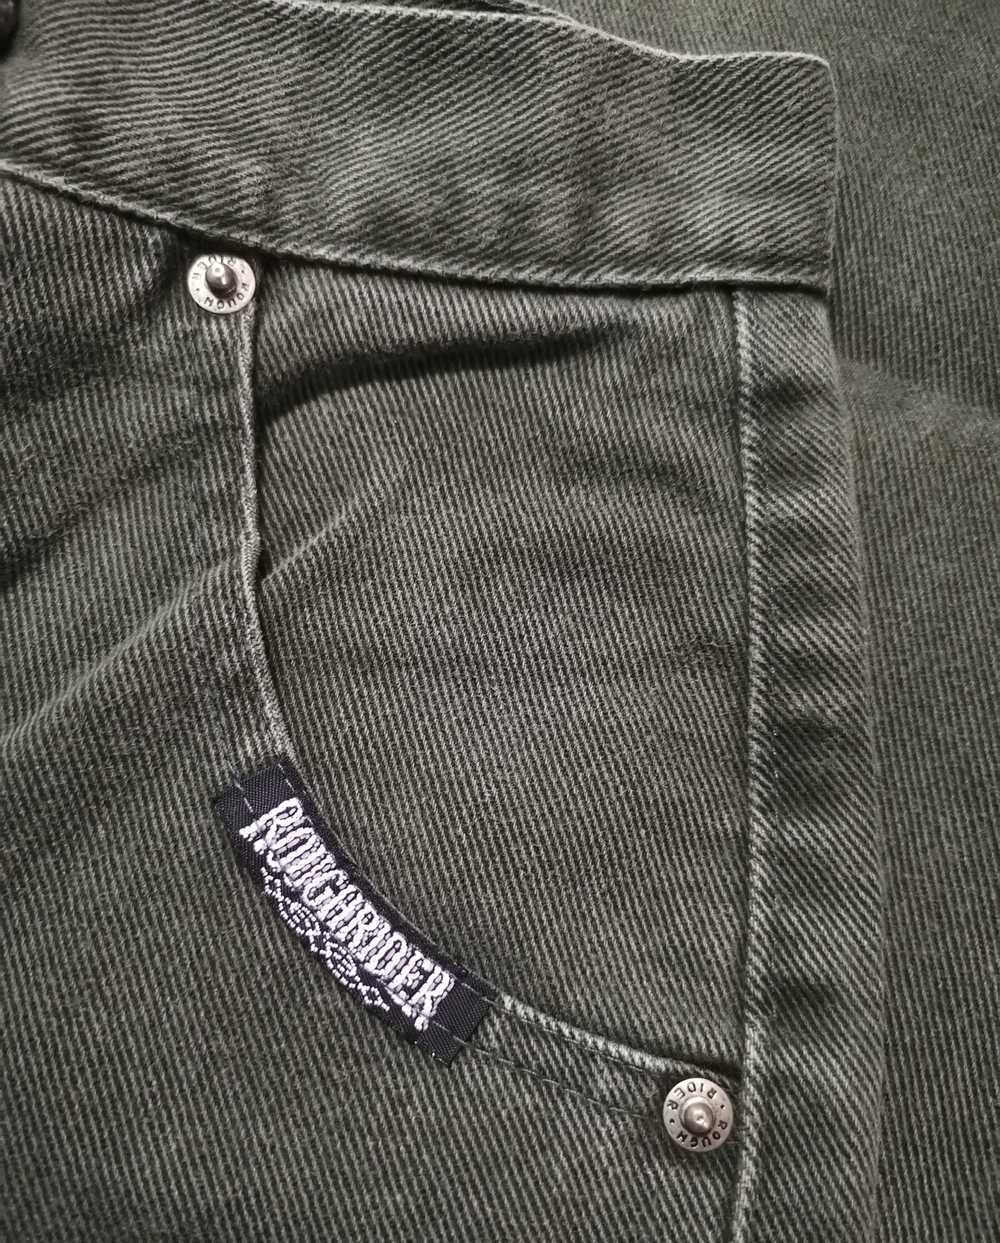 Vintage Roughrider Jeans x Talon Zipper - image 6